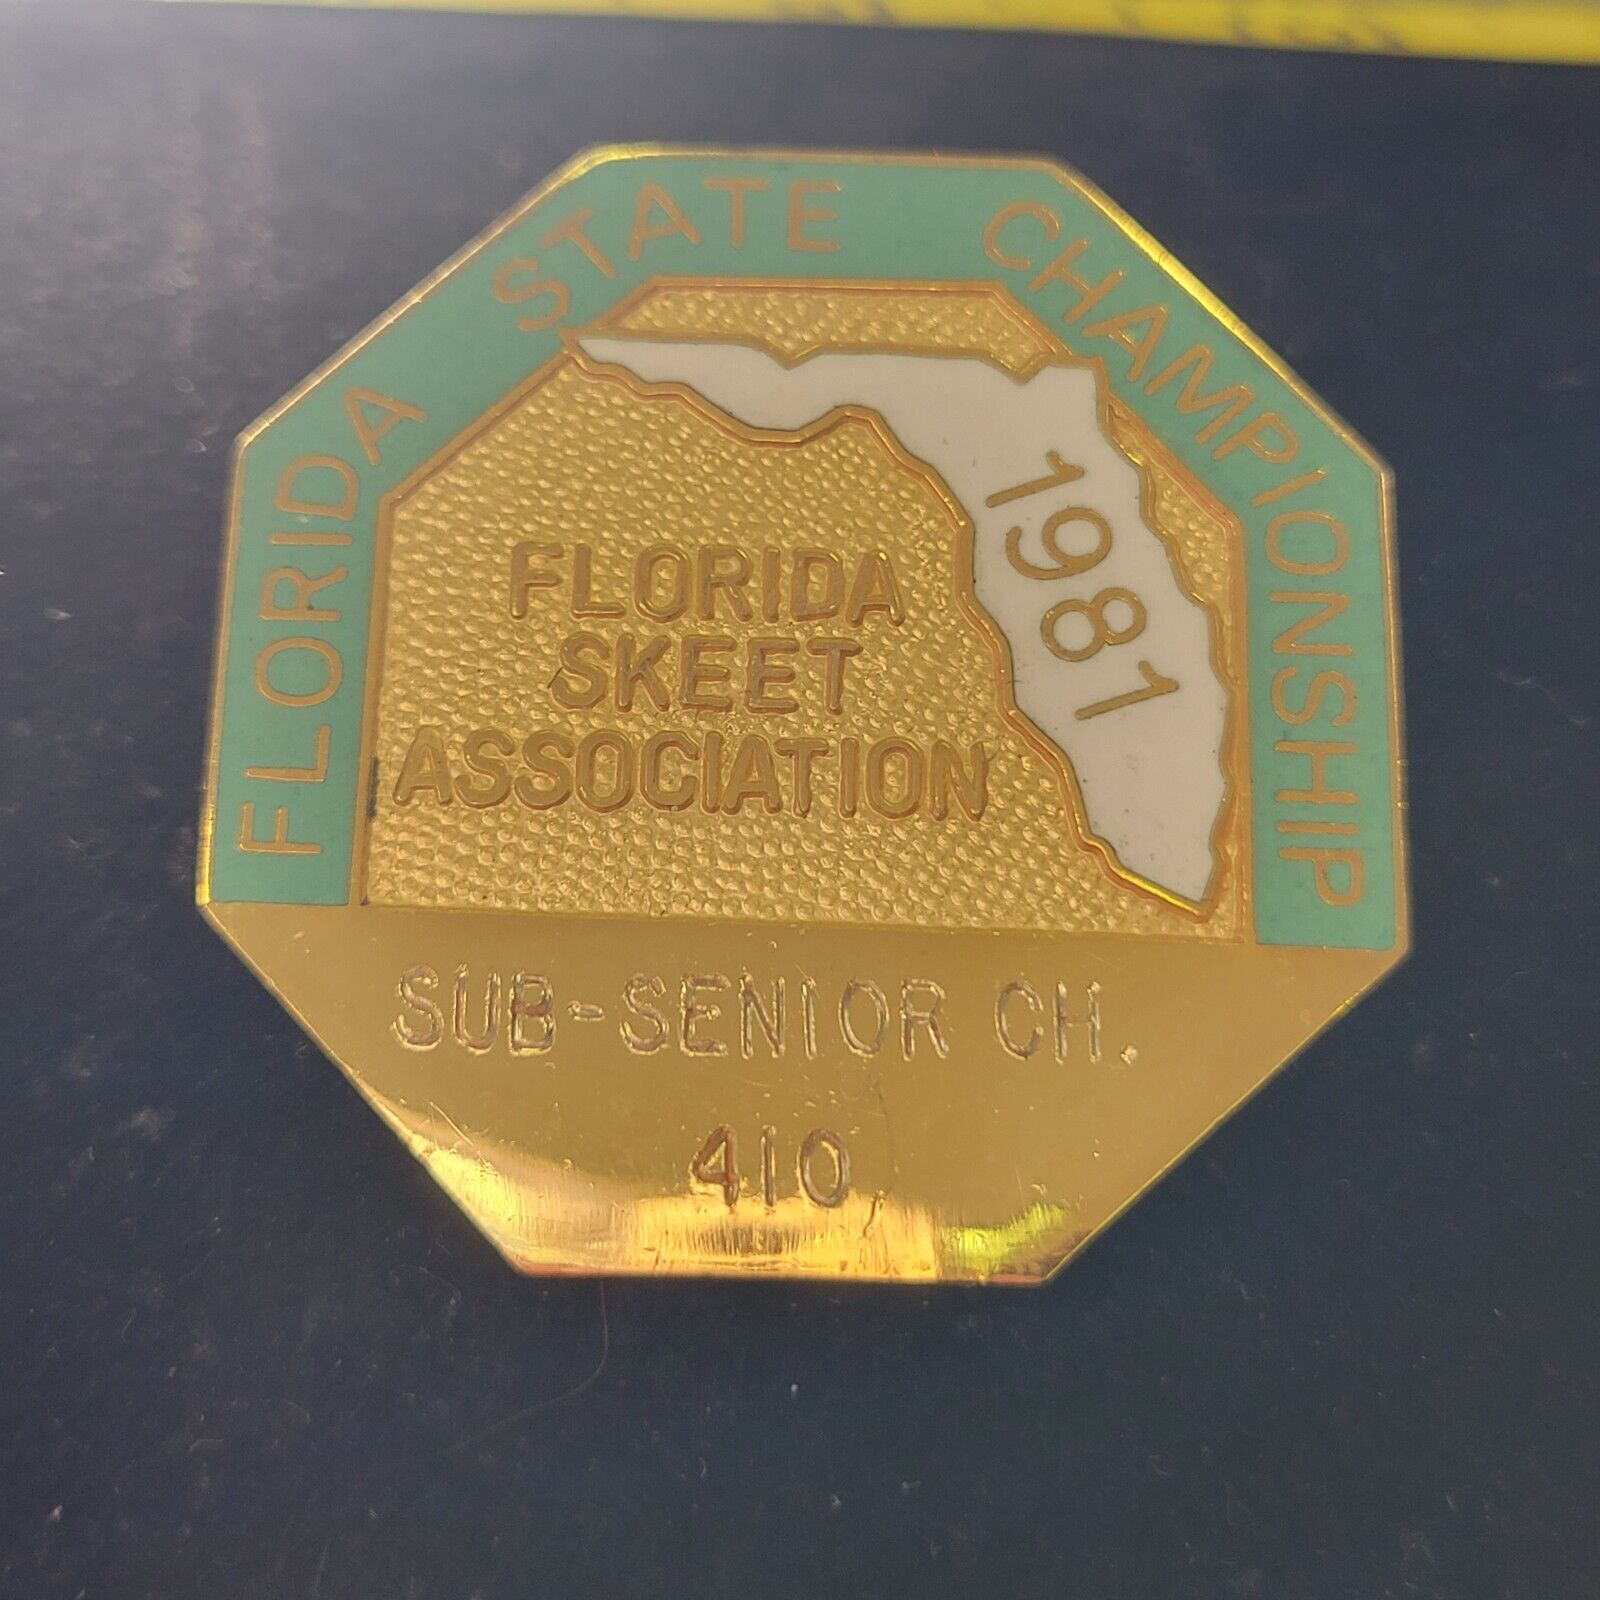 1981 Florida State Championship Skeet Association Sub-Senior 410 Lapel Badge Pin